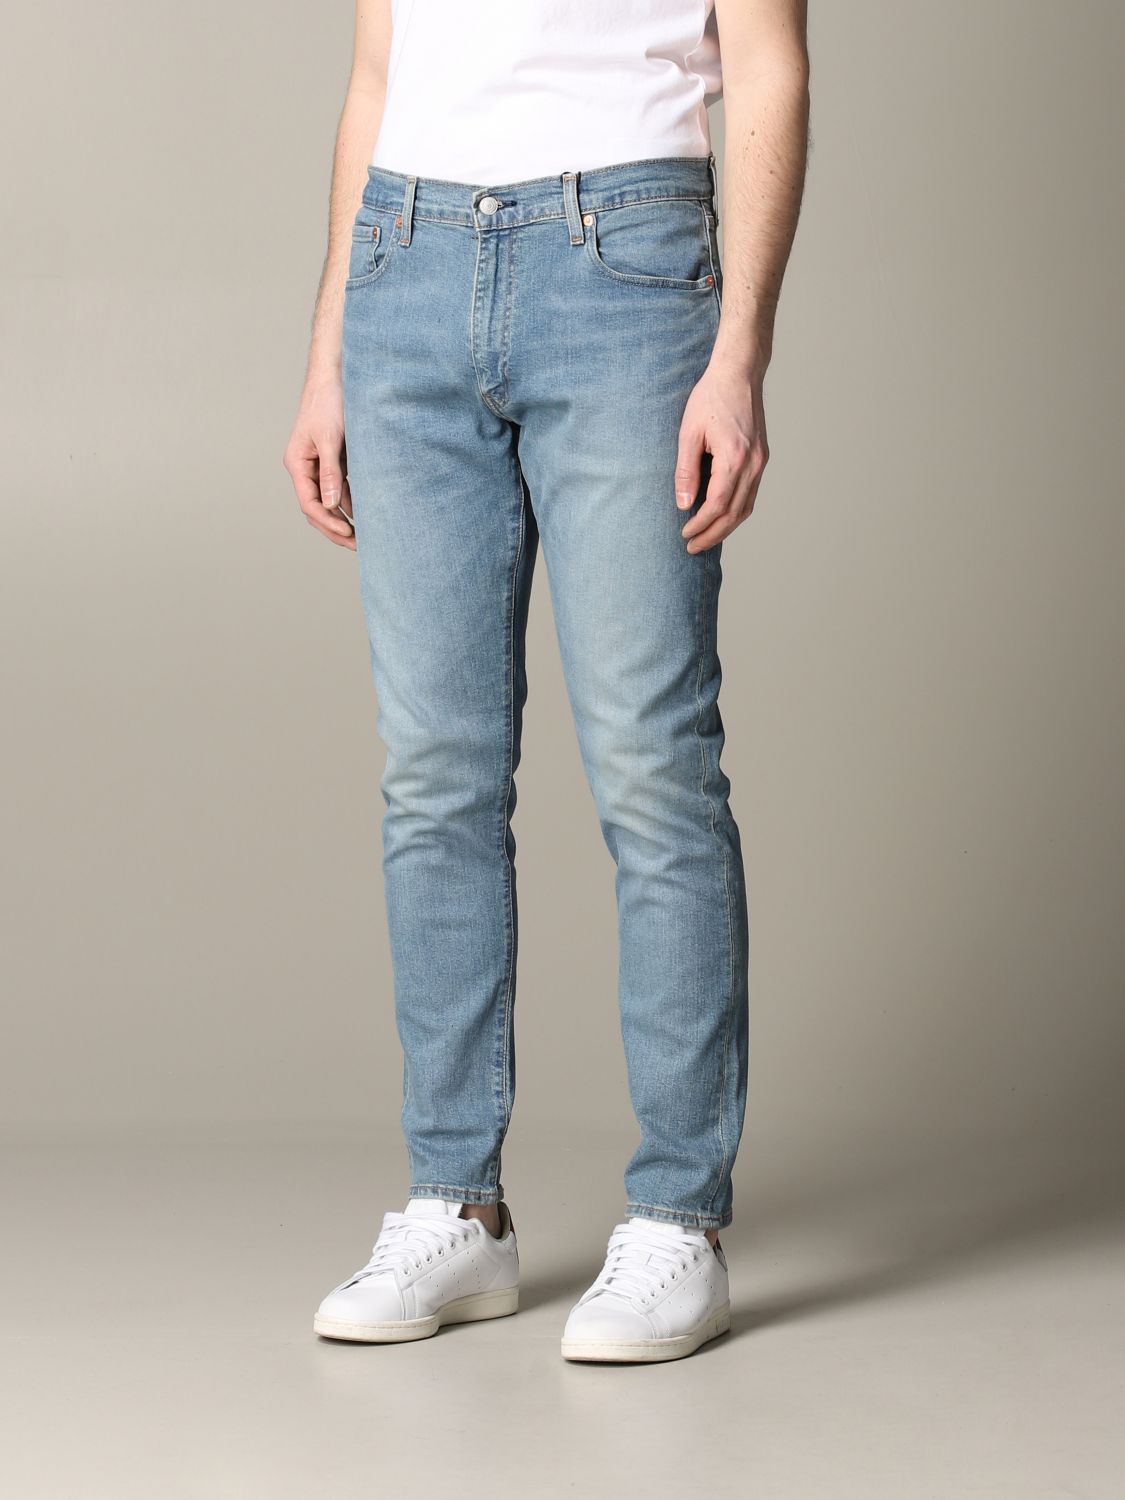 Levi's jeans in used denim | Jeans Levi's Men Denim | Jeans Levi's ...